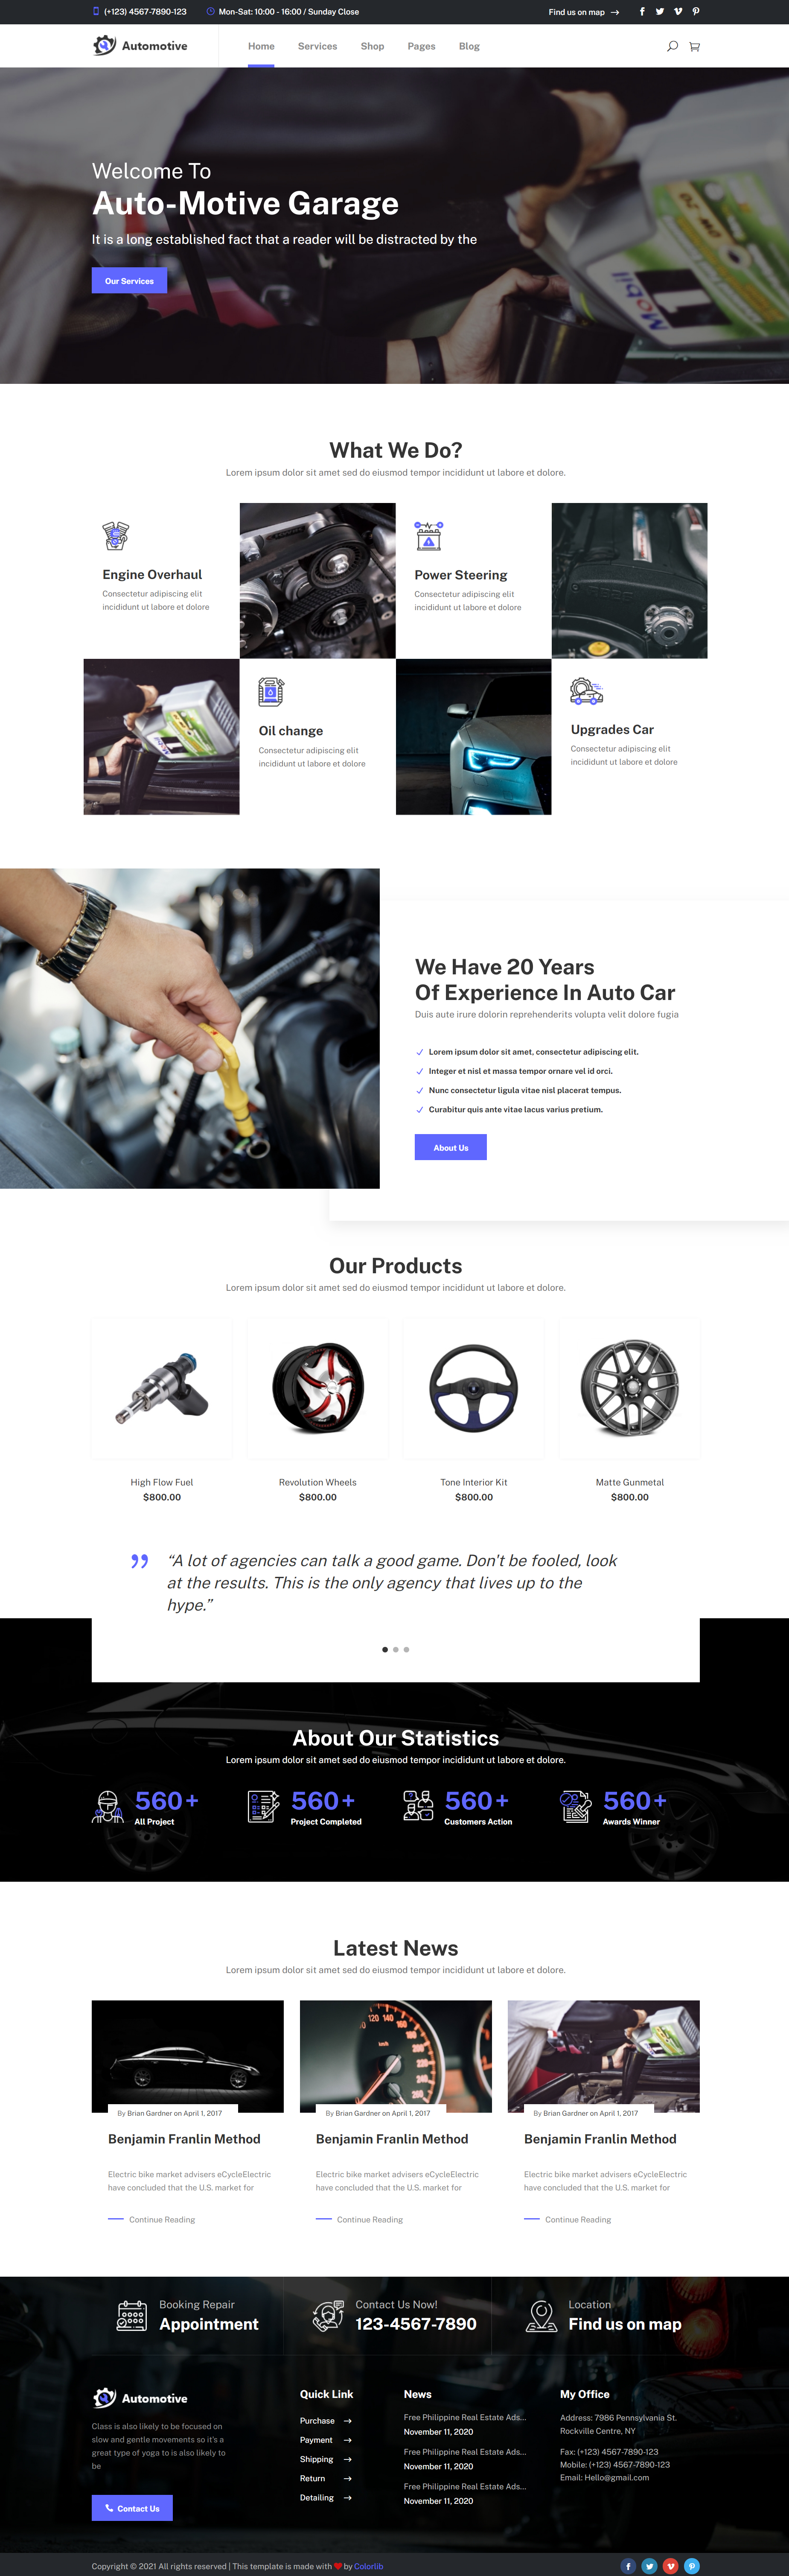 蓝色简洁风格响应式汽车保养维修企业网站模板